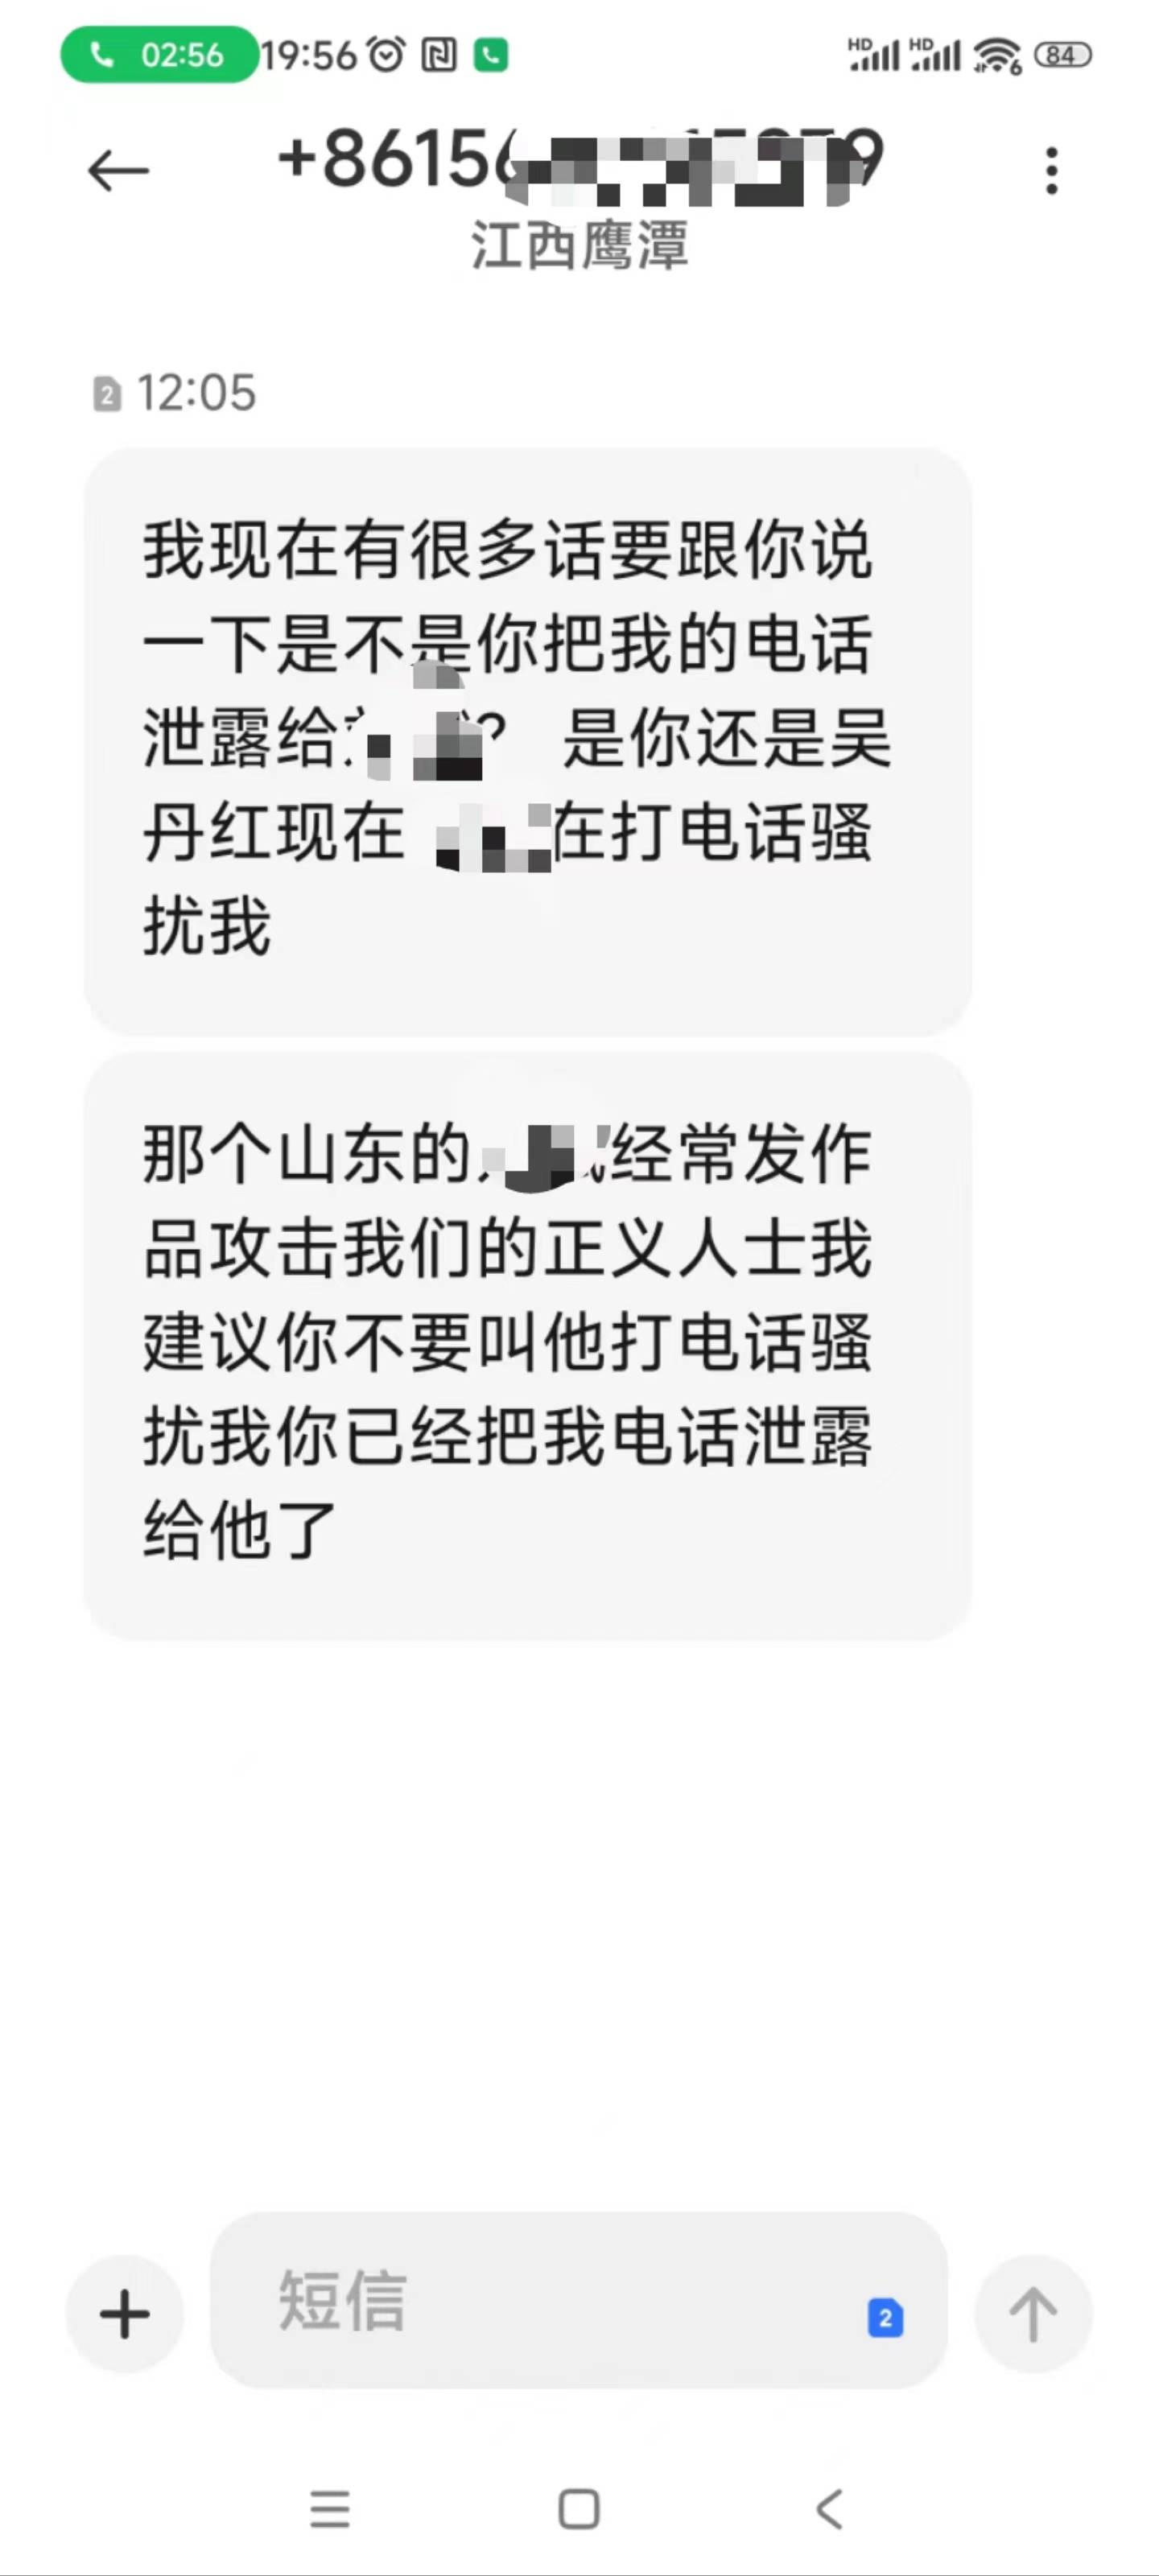 劳荣枝辩护律师称收到死亡威胁电话，警方已立案